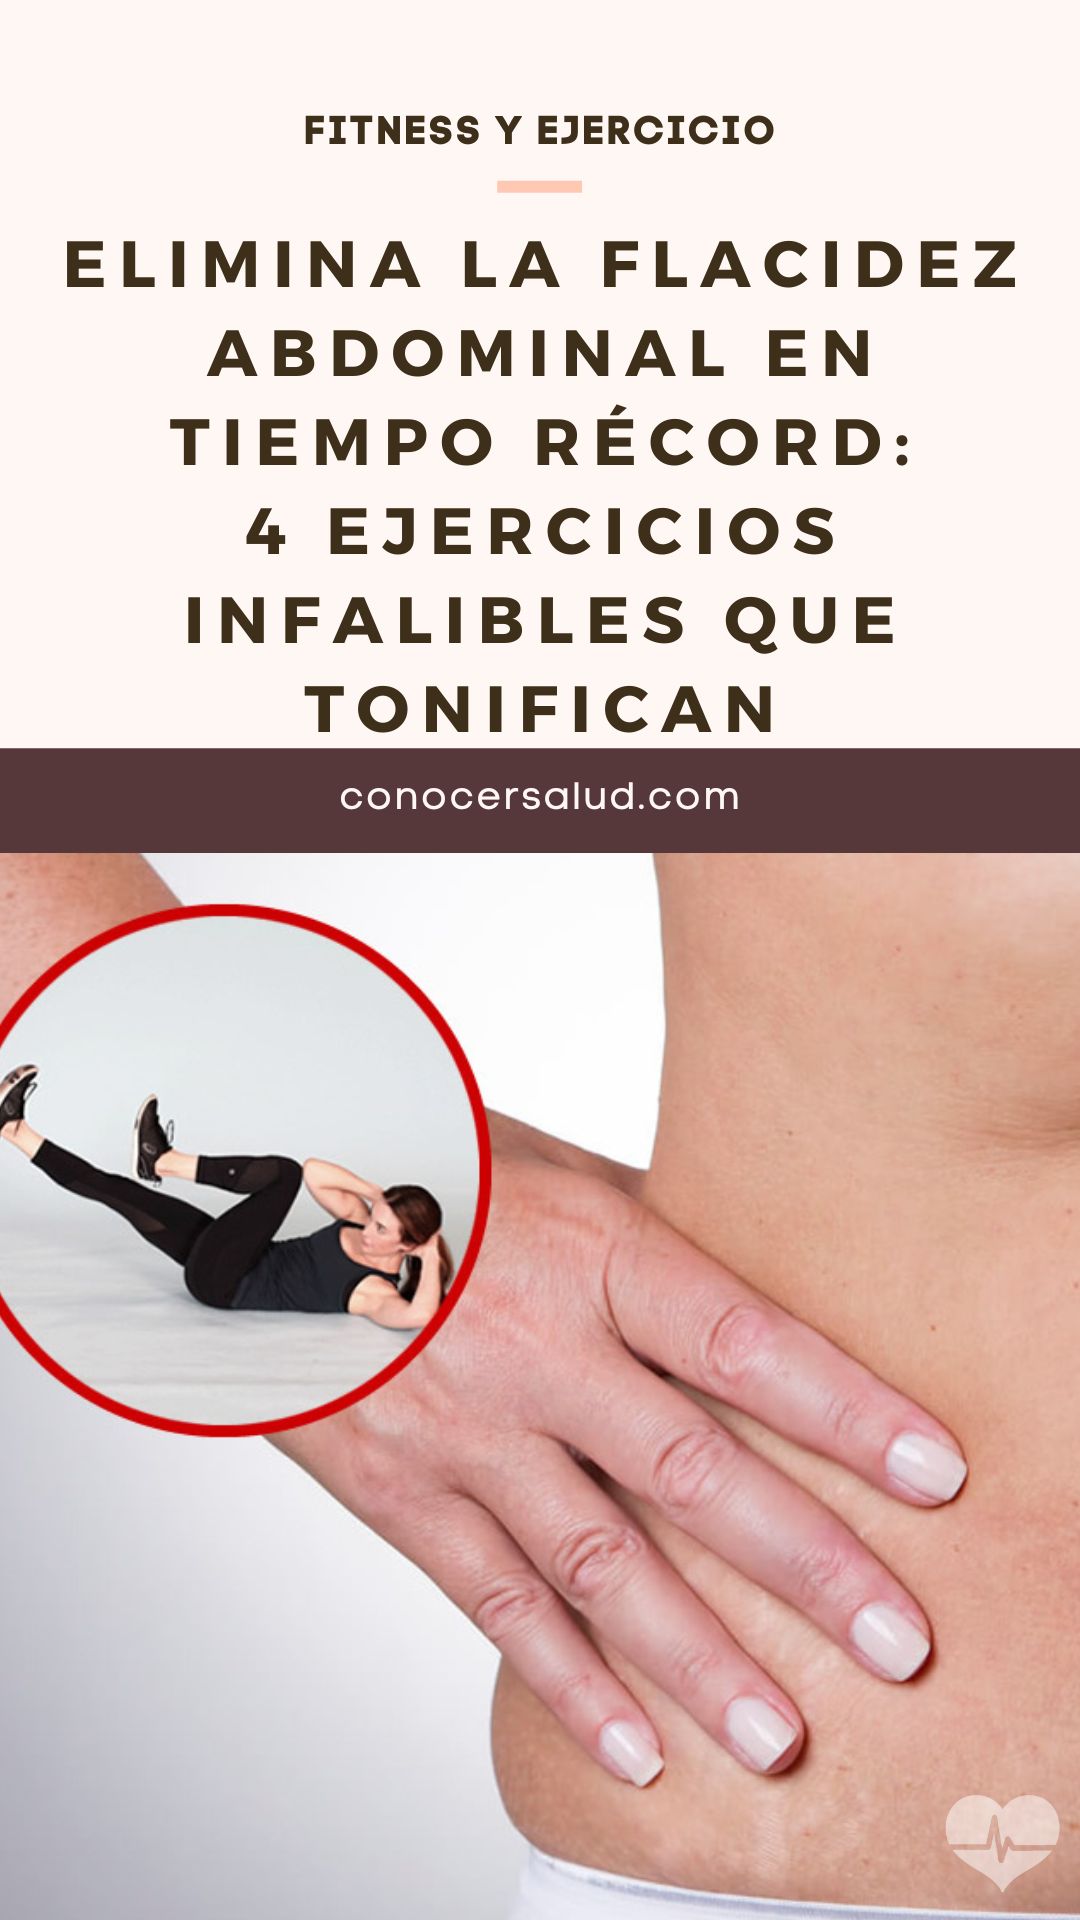 Elimina la flacidez abdominal en tiempo récord: 4 ejercicios infalibles que tonifican